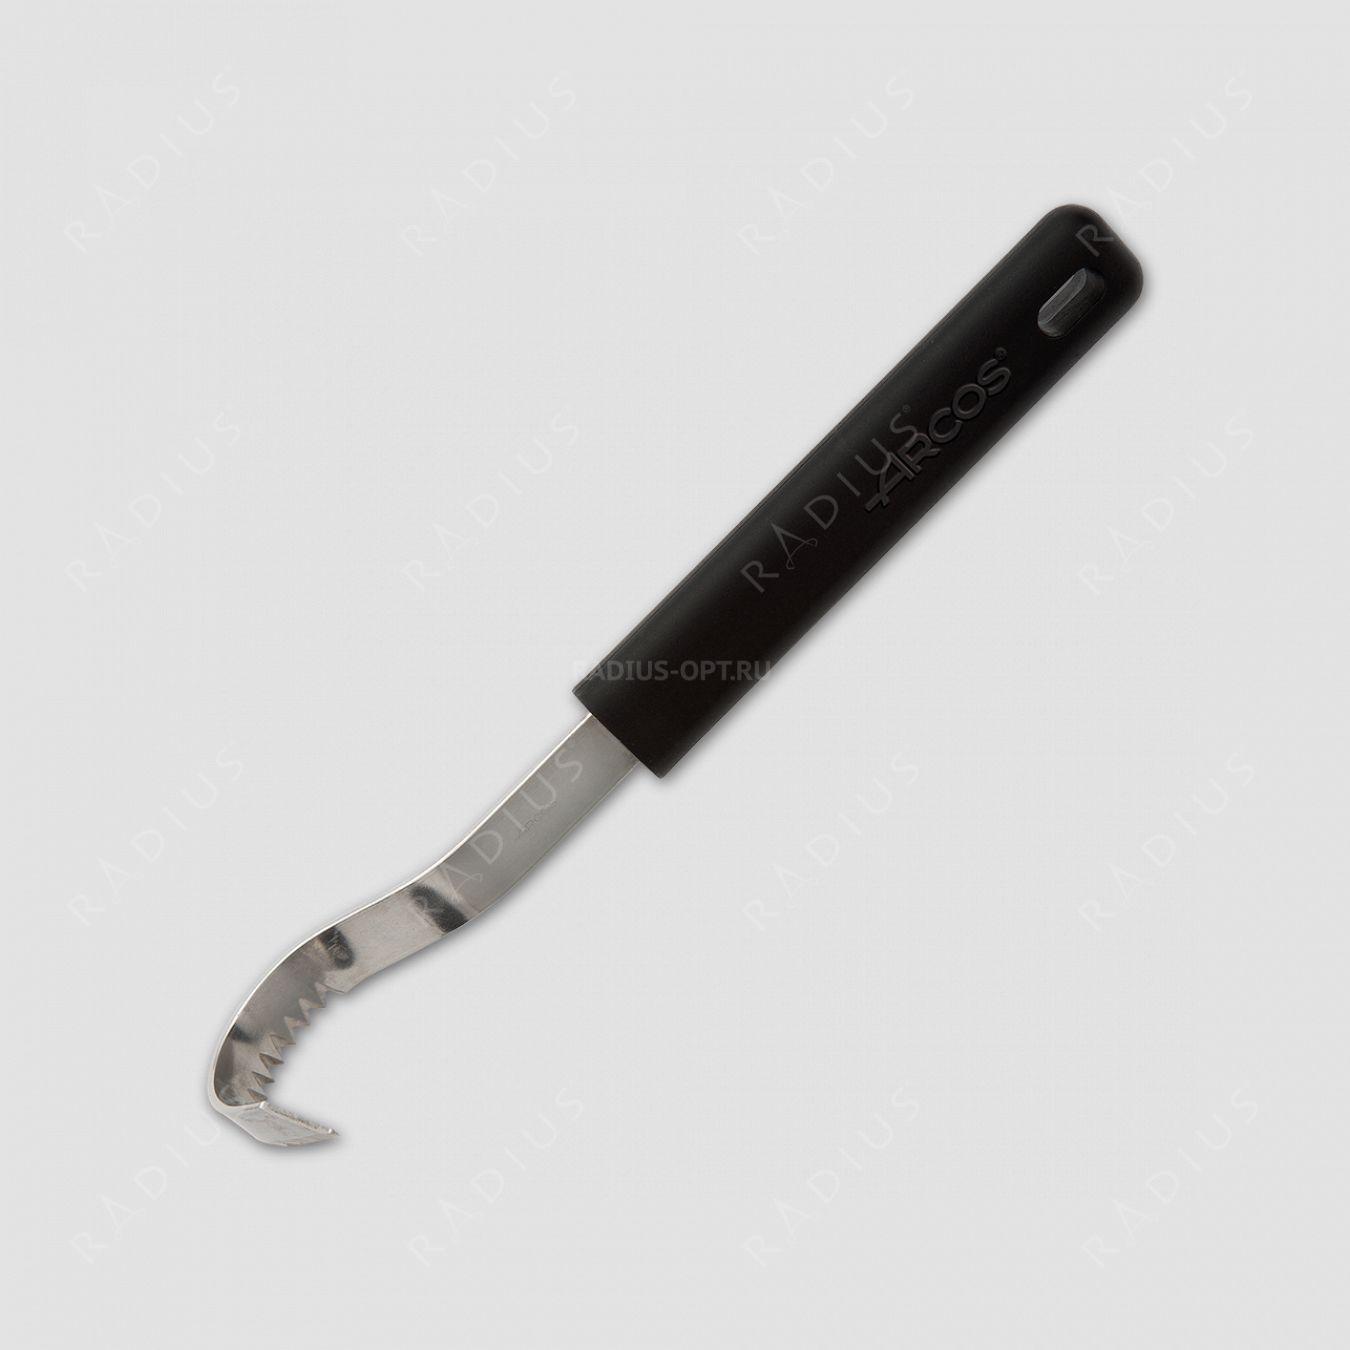 Нож декоративной нарезки масла, 85 мм, серия Kitchen gadgets, ARCOS, Испания